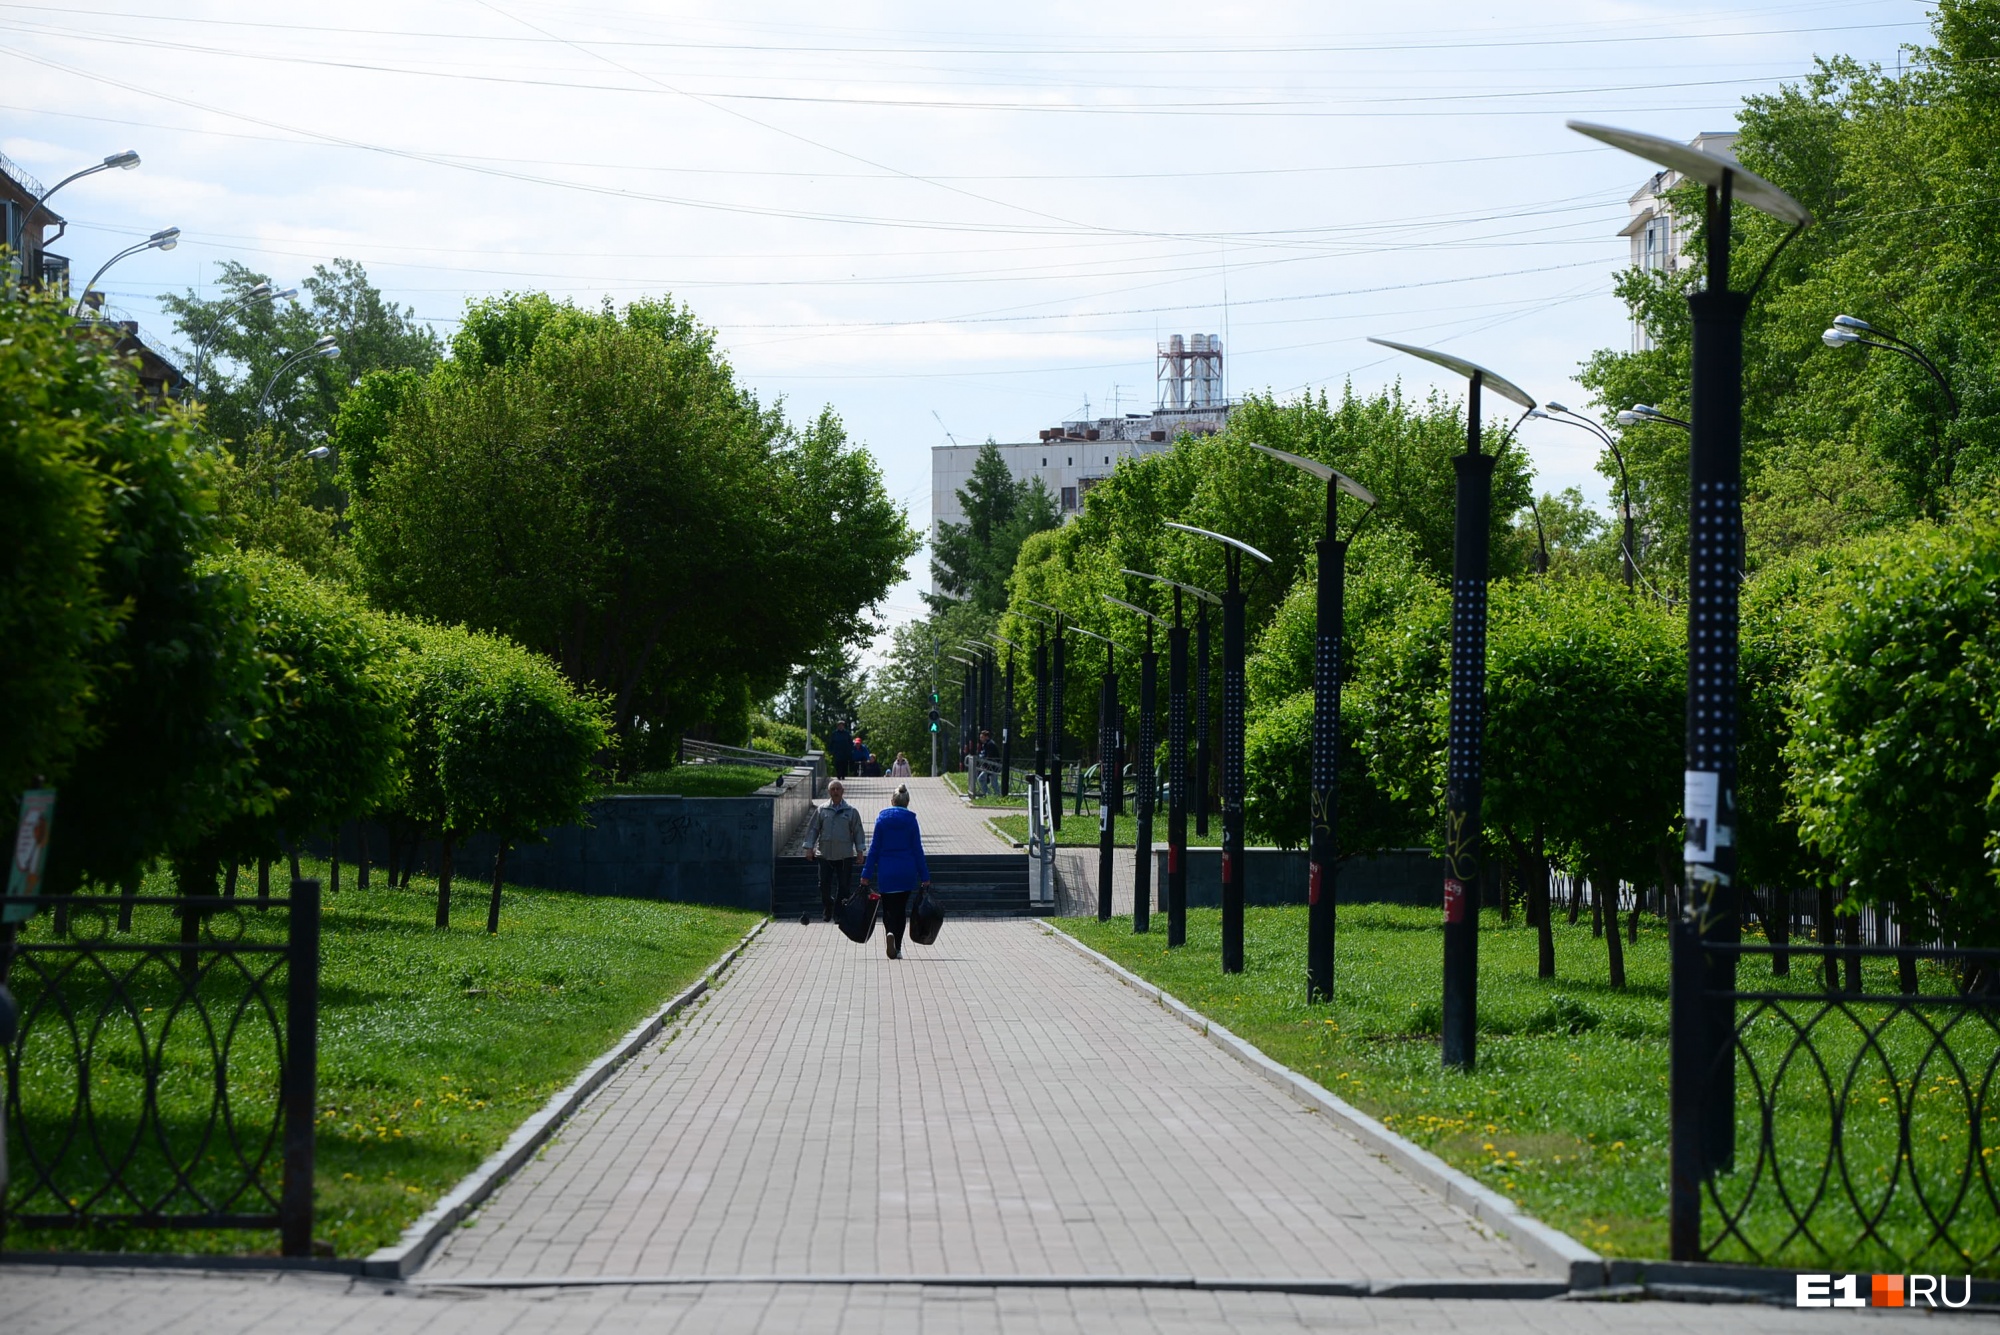 В Екатеринбурге отменили обещанные перекрытия на улице Мира